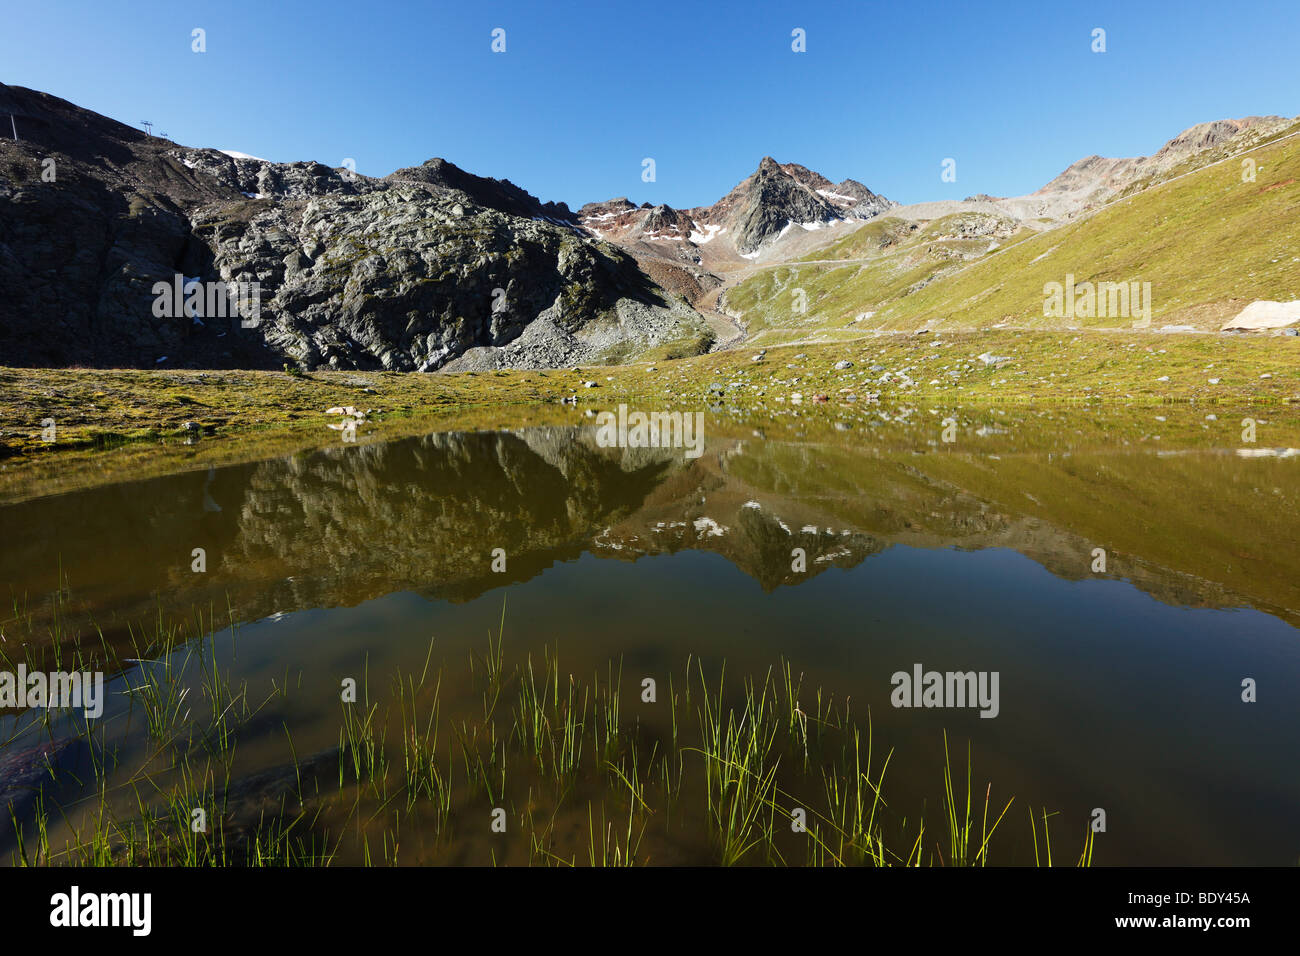 Weisssee Lake, Kaunertal, Alpes Ötztal, Tyrol, Autriche, Europe Banque D'Images